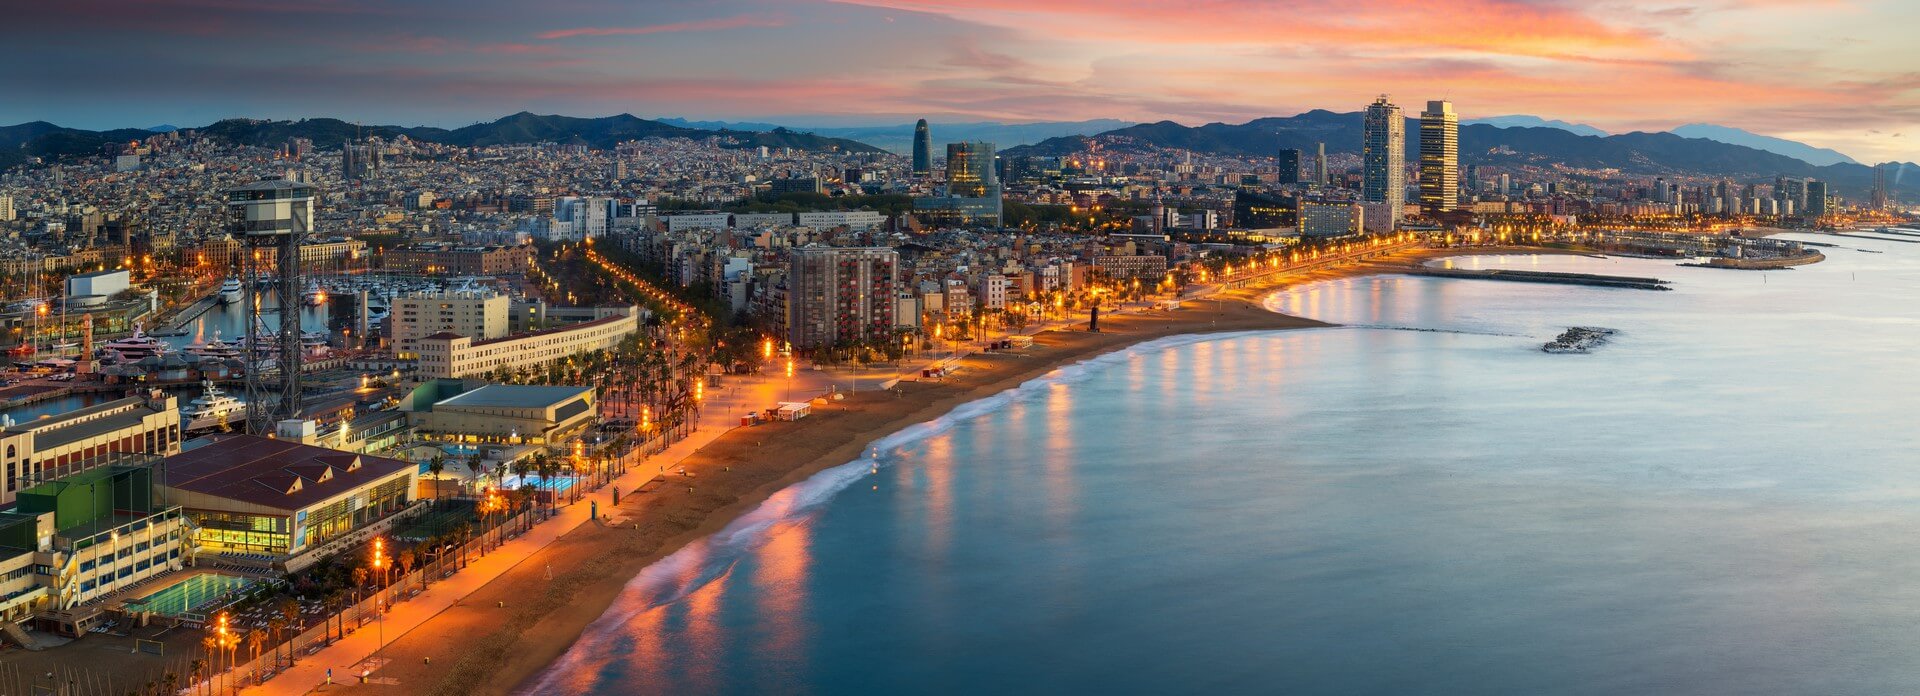 Plage de Barcelone au lever du soleil du matin avec la ville de Barcelone et la mer depuis le toit de l'hôtel, Espagne